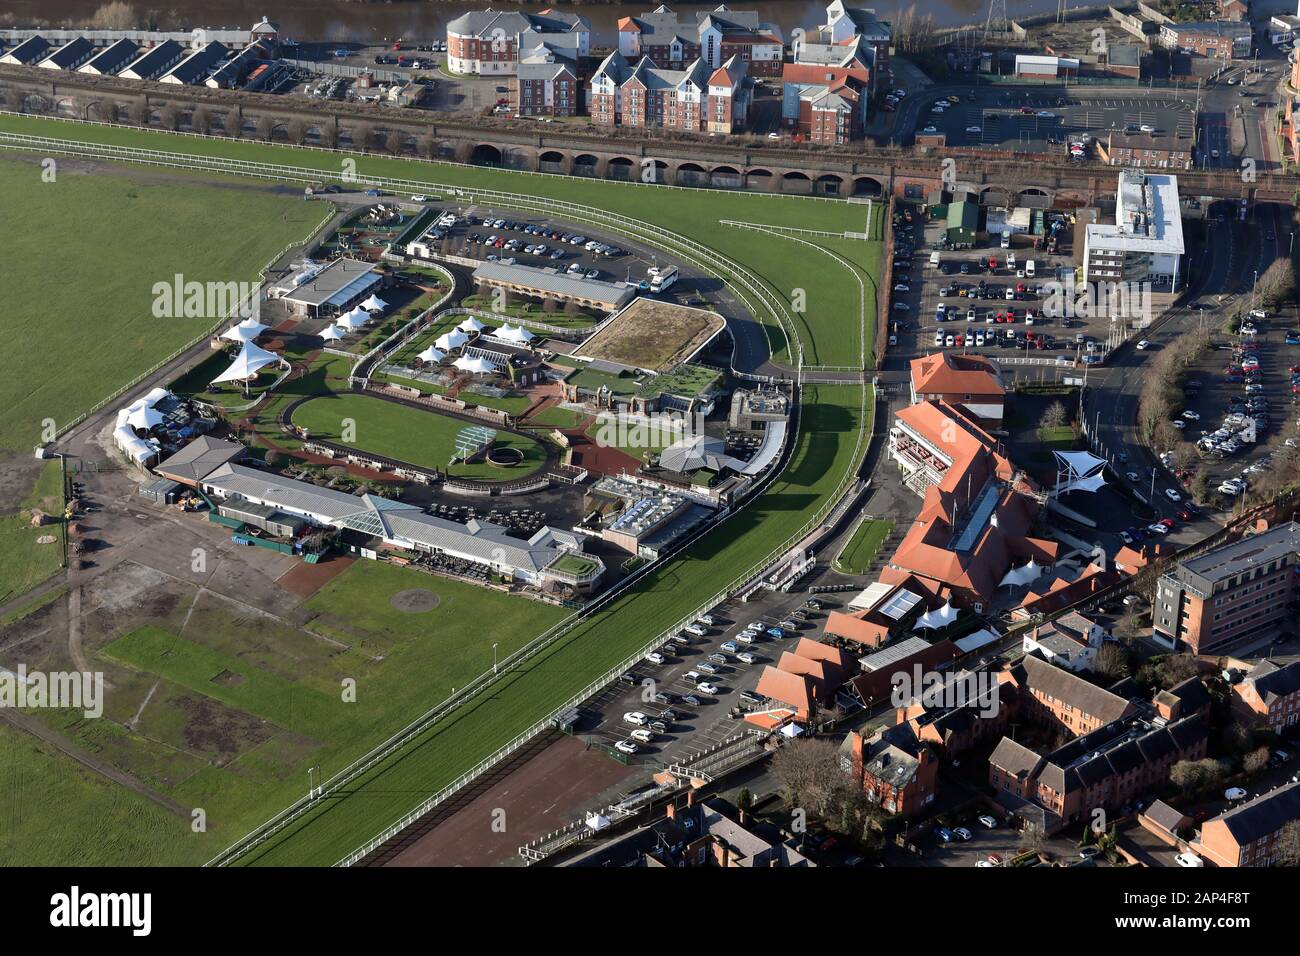 Veduta aerea degli stand, paddock & sfilata anello di Chester Racecourse, Regno Unito Foto Stock